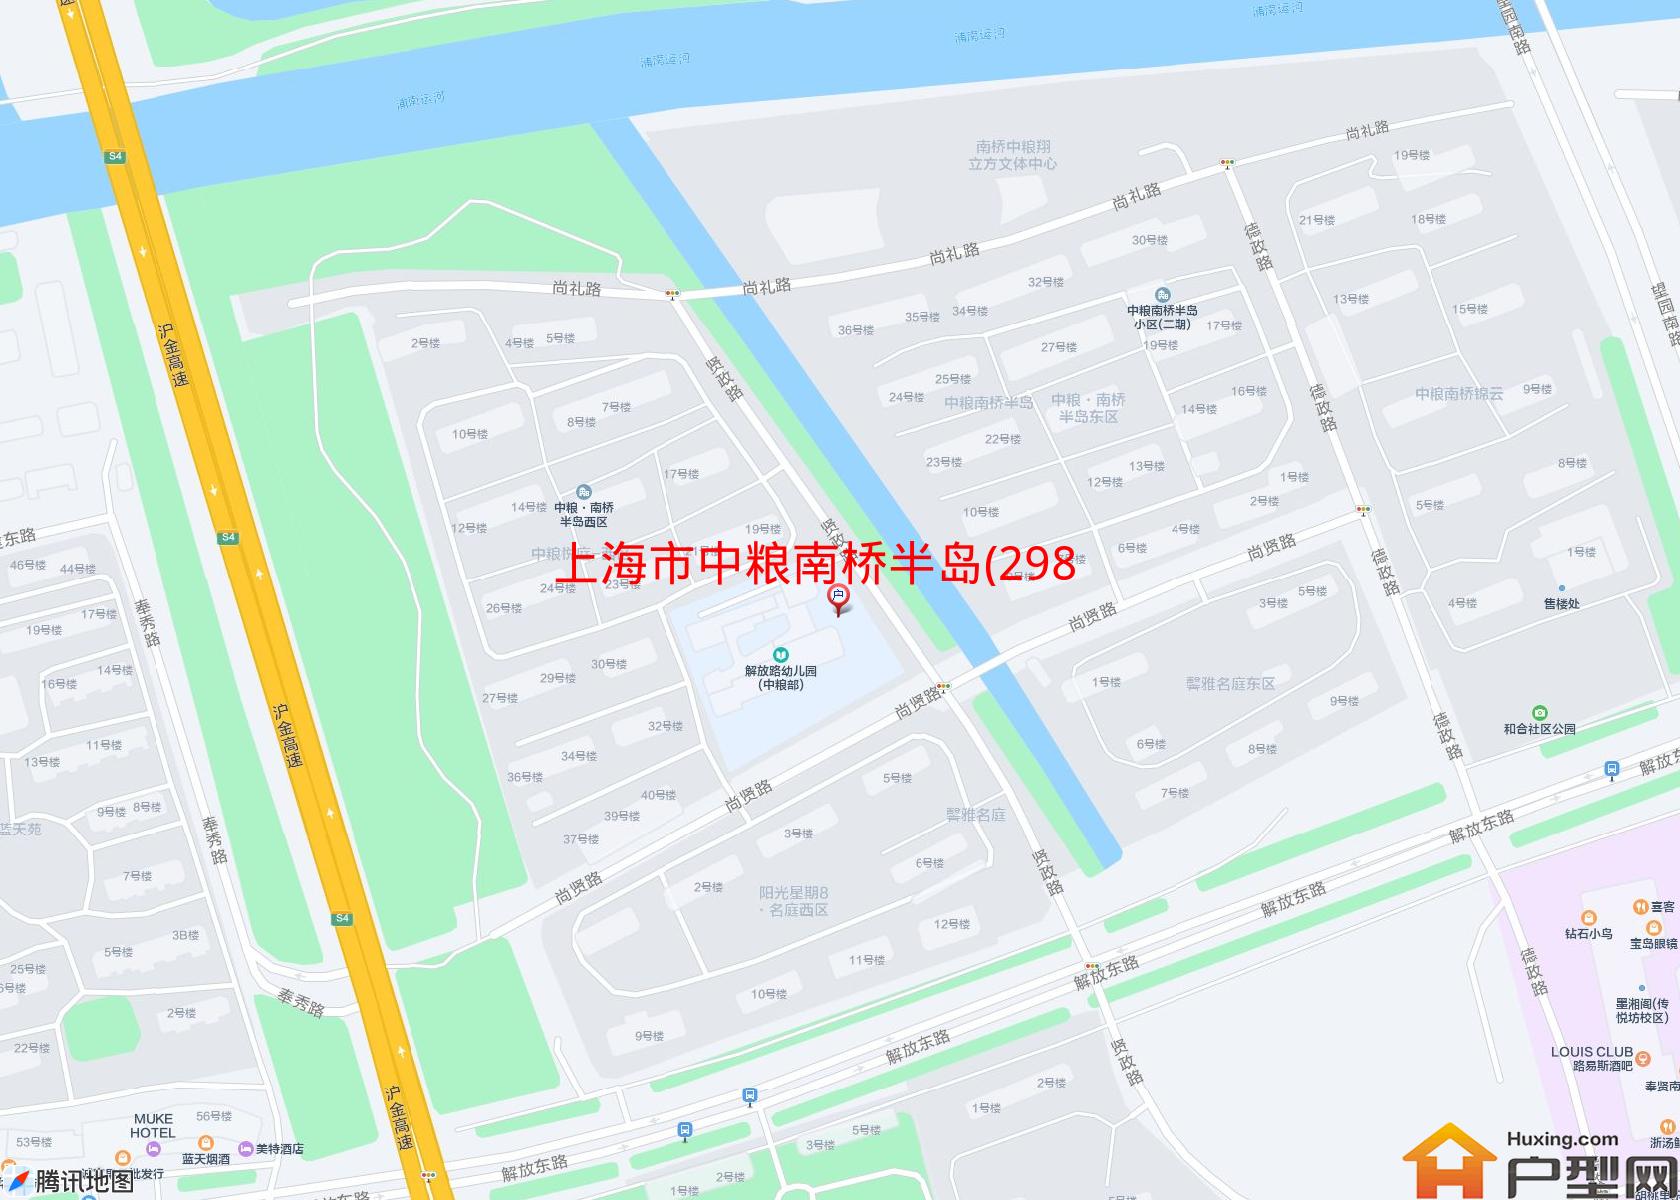 中粮南桥半岛(298弄)小区 - 户型网